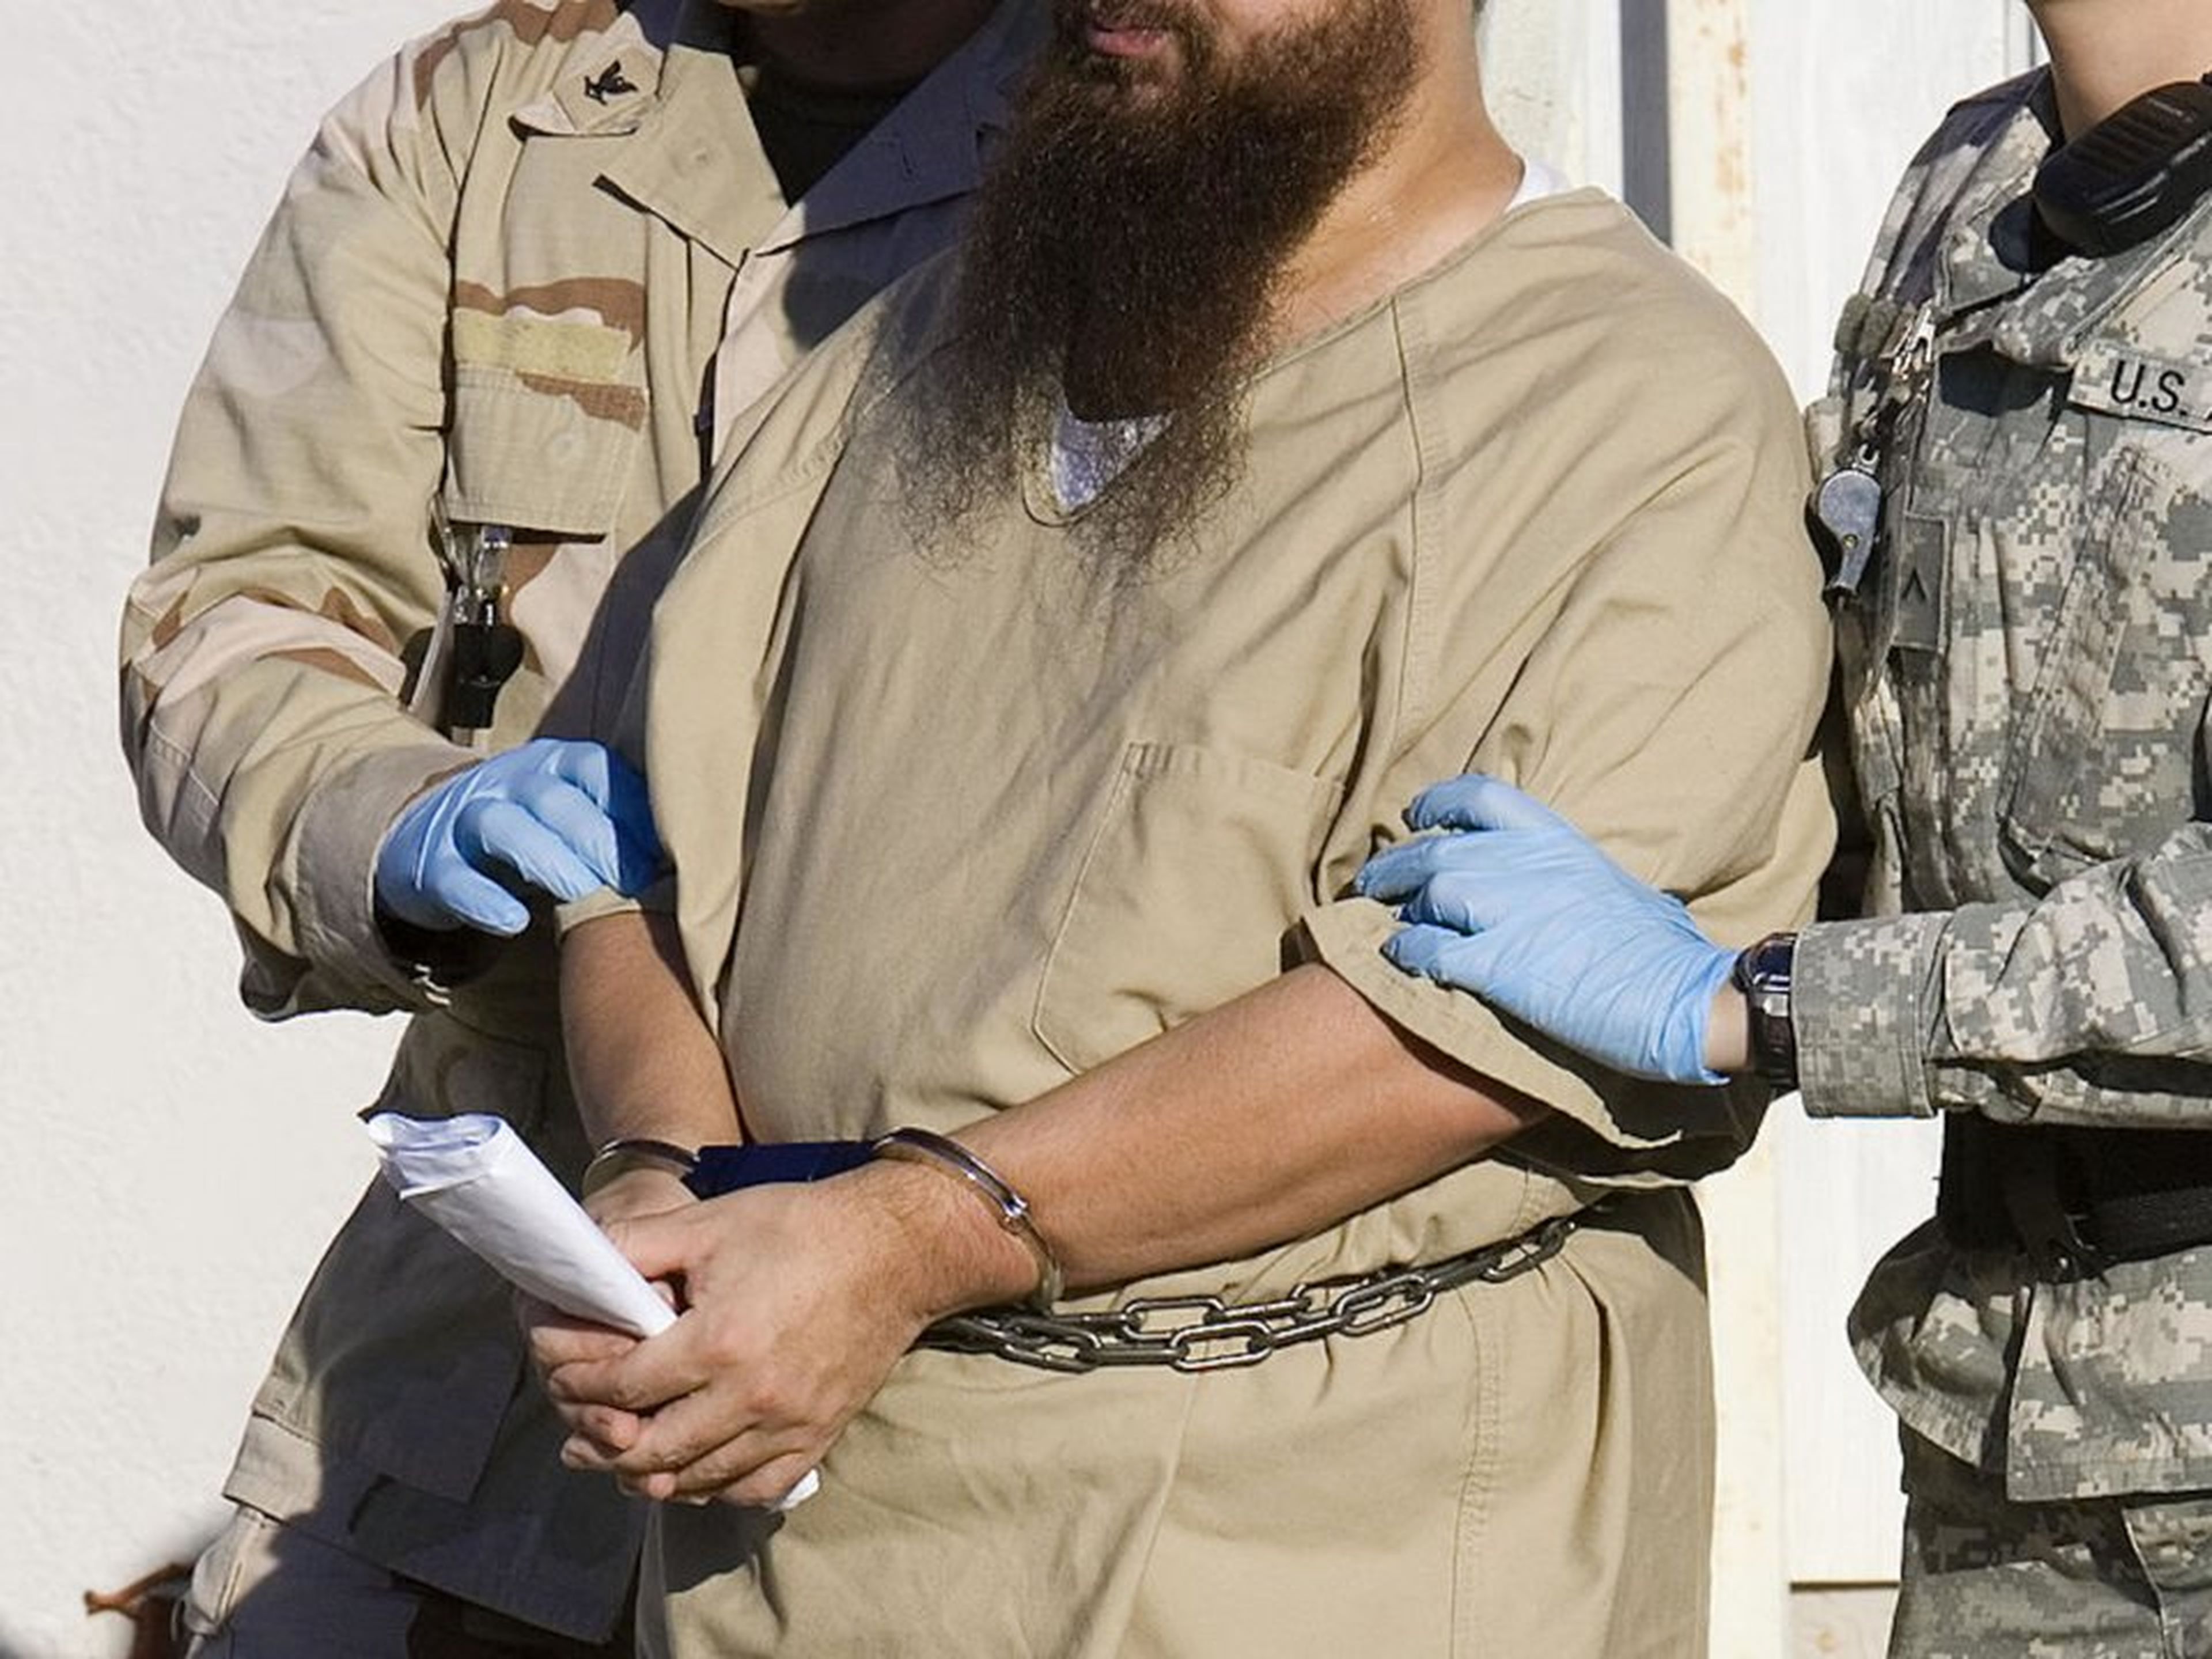 Un detenido escoltado por guardias militares en la Bahía de Guantánamo en Cuba en 2006.